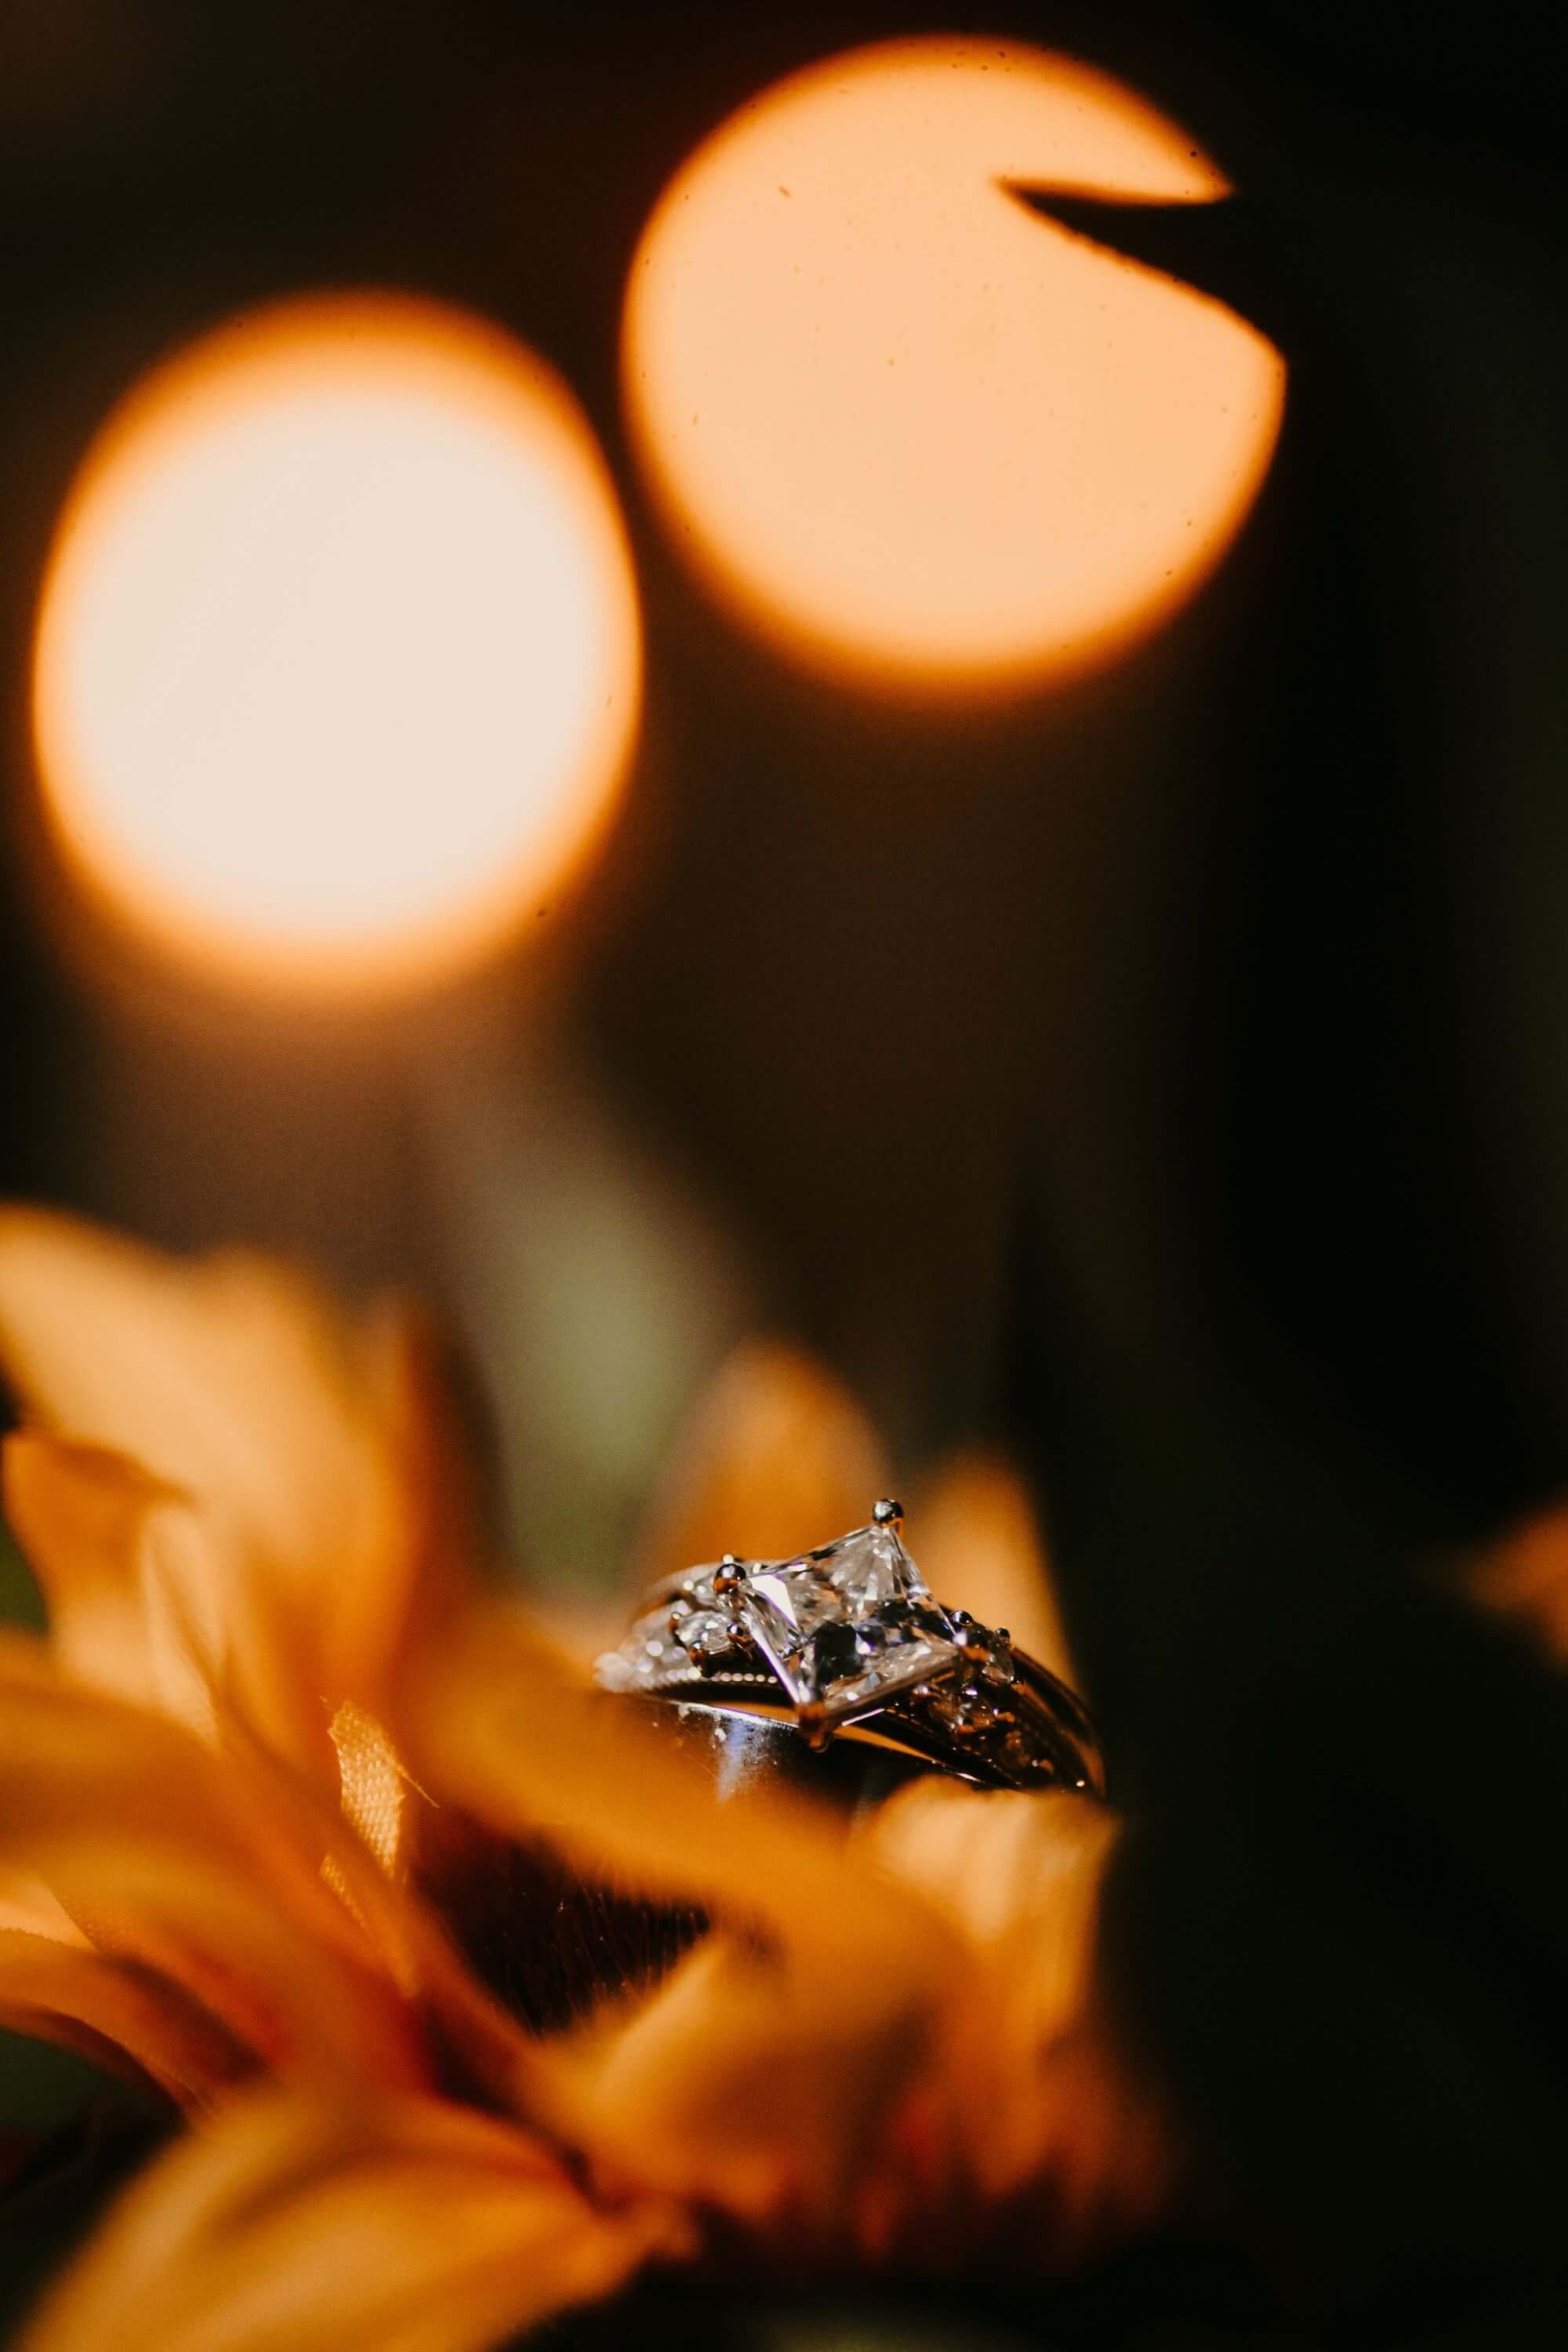 Wedding Rings on flowers